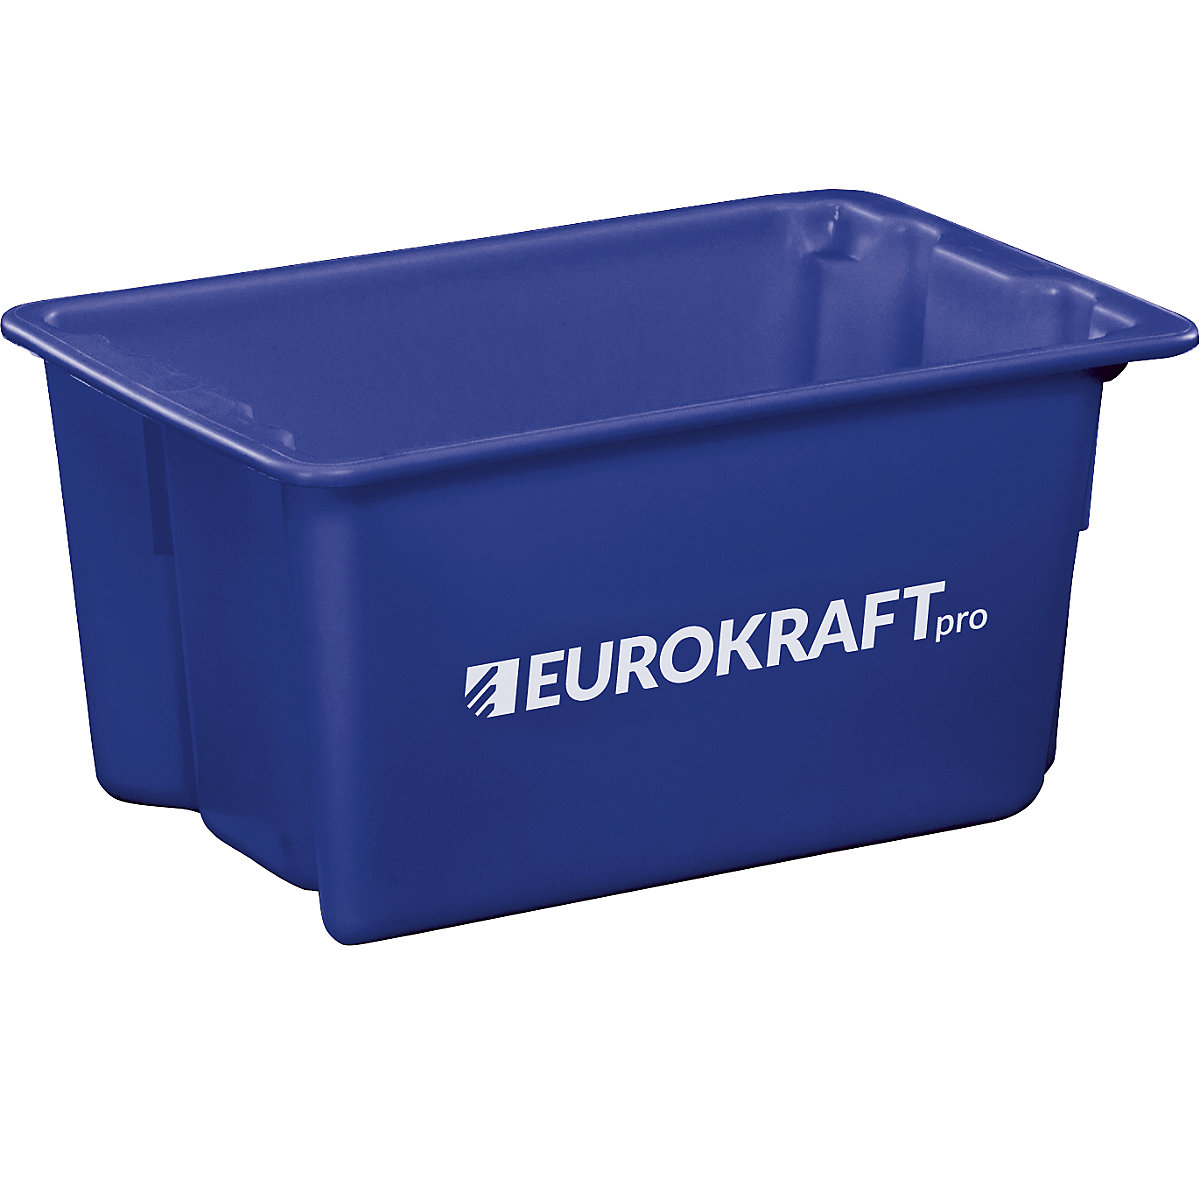 EUROKRAFTpro – Zasučna posoda za zlaganje iz polipropilena, primernega za živila, prostornina 50 l, DE 3 kosi, stene in dno zaprti, modra